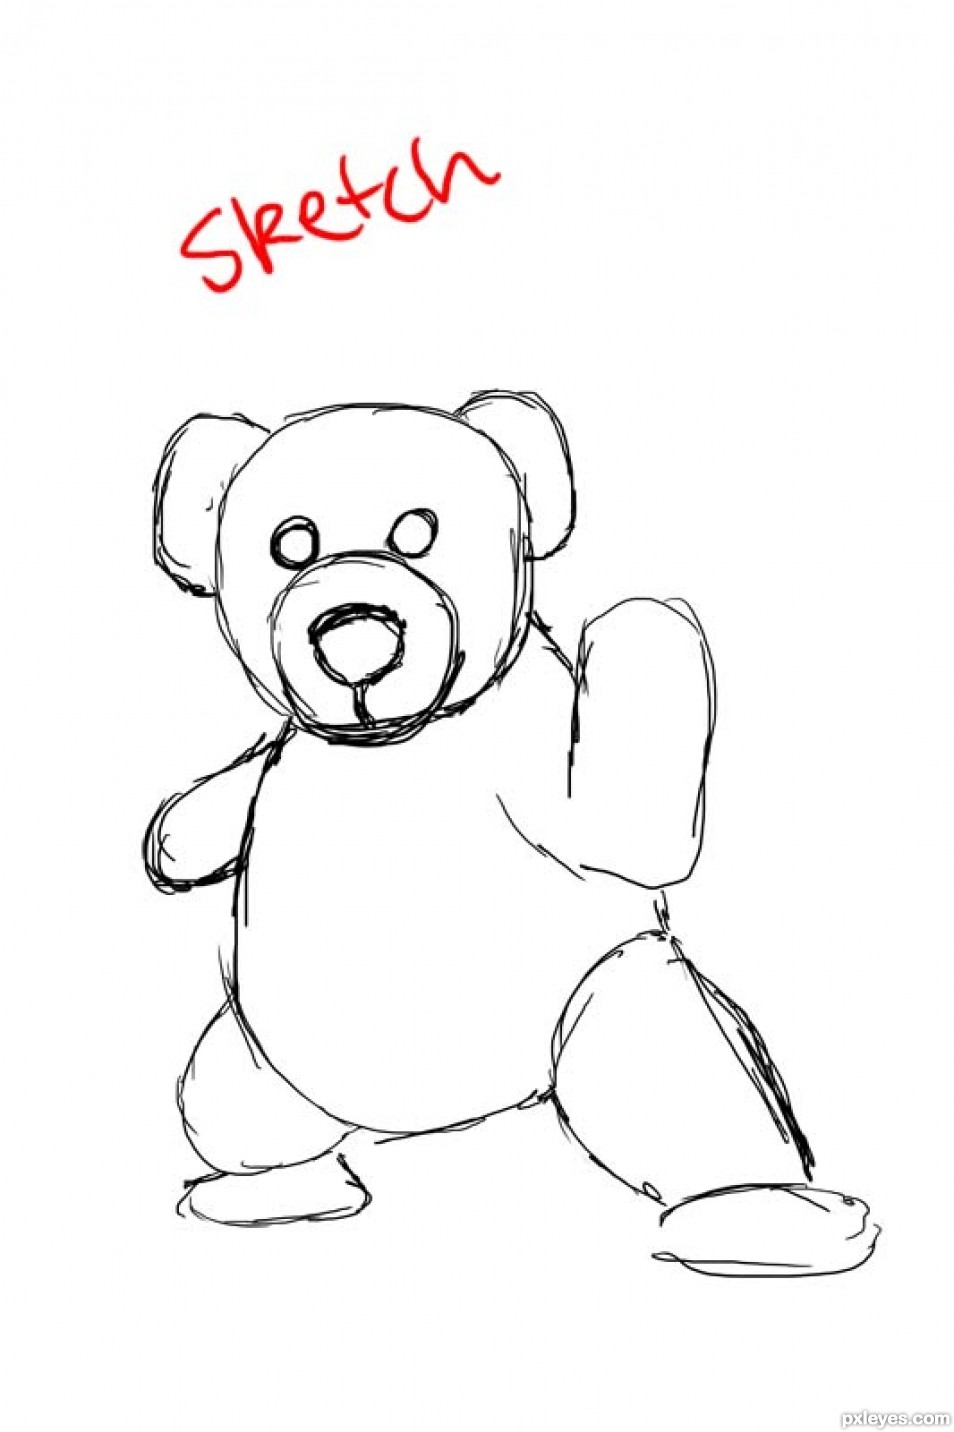 Creation of Bear...Teddy Bear: Step 7